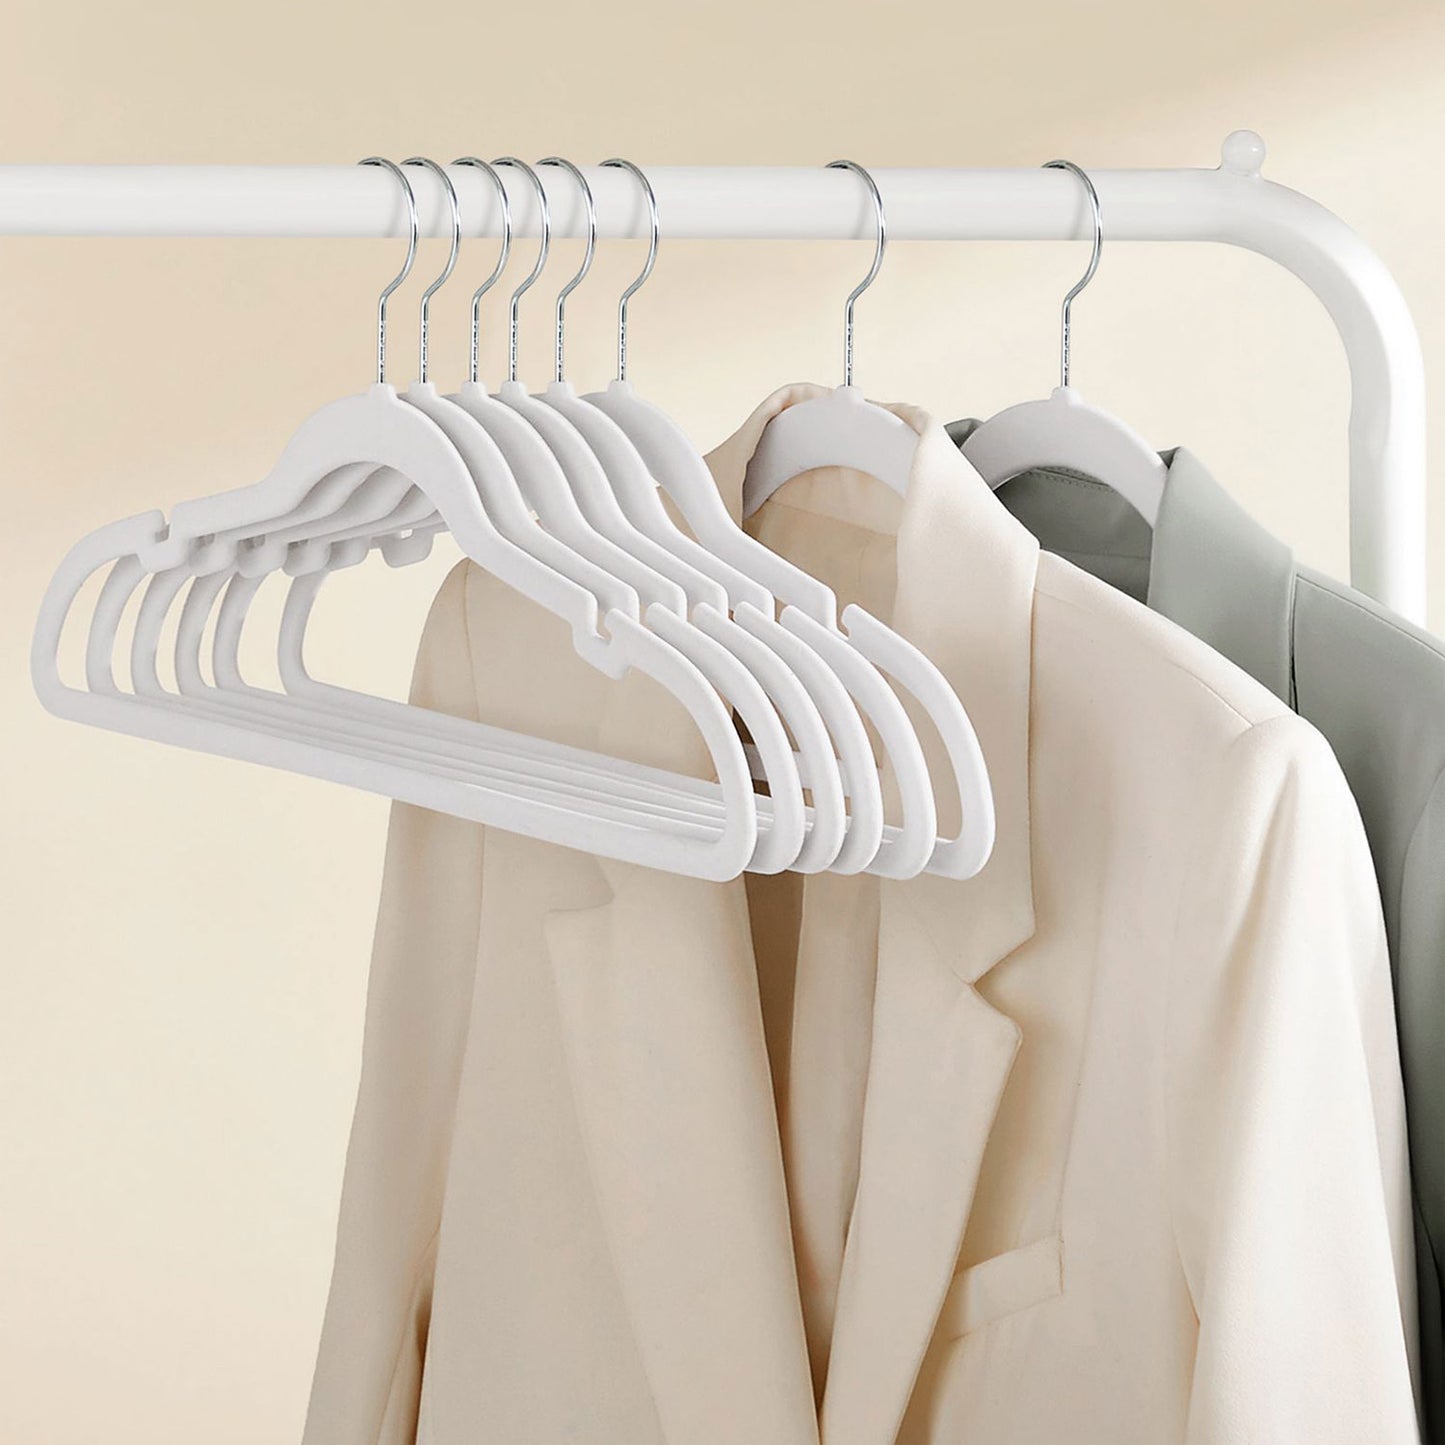 Clothes Hanger, Velvet Hanger, Coat Hanger, Pack 50 Coat Hangers for Clothes, Non-Slip, 43 cm Long, White, SONGMICS, 1